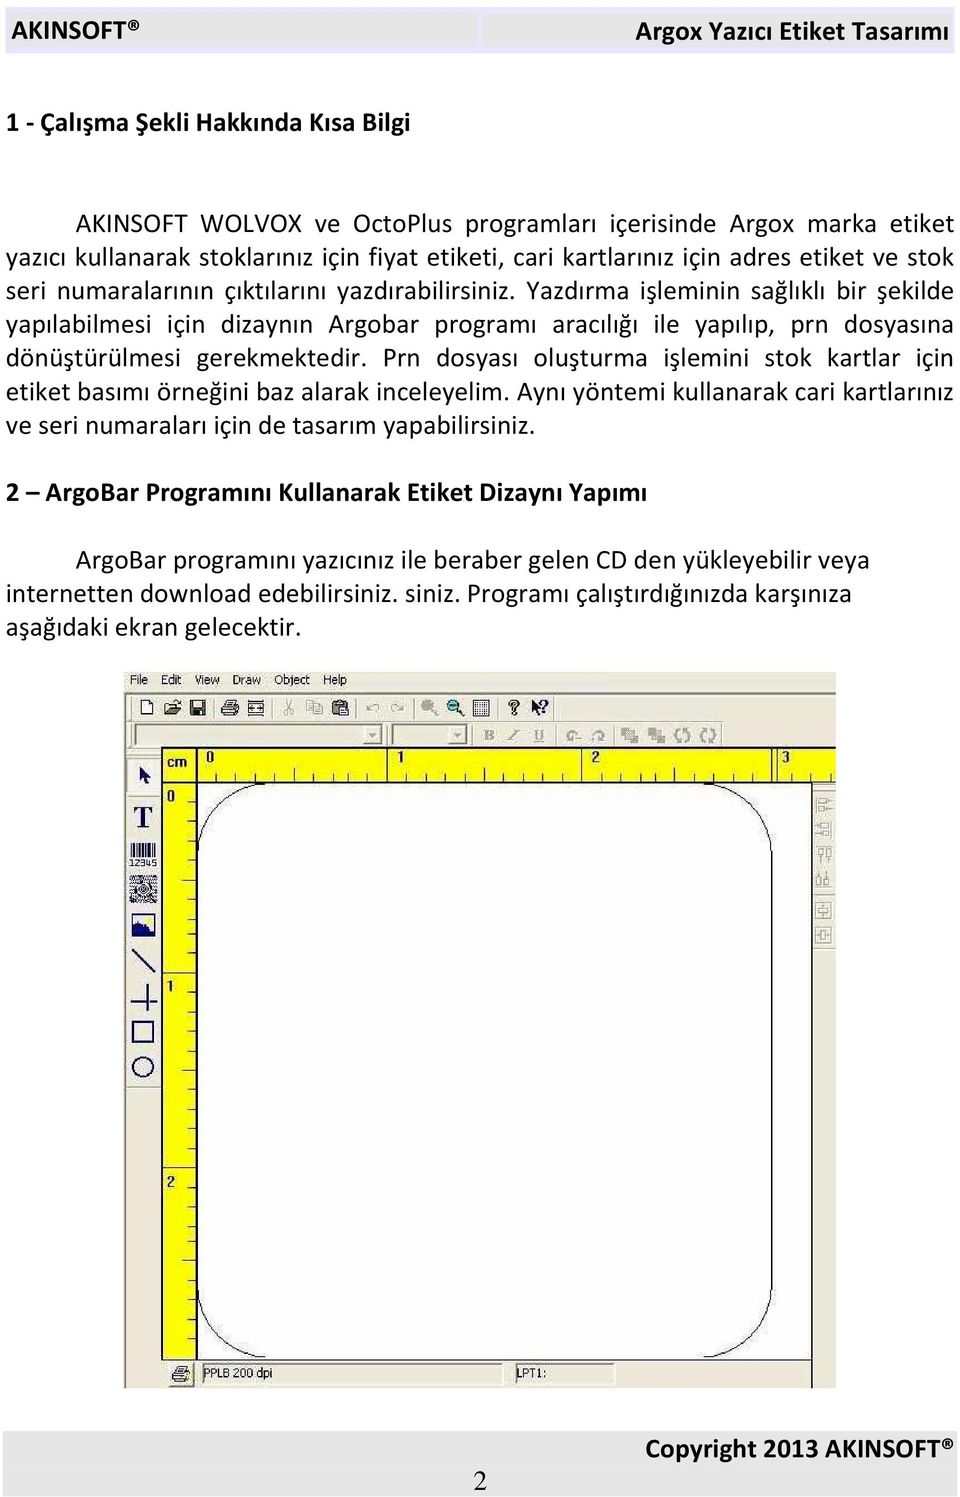 Yazdırma işleminin sağlıklı bir şekilde yapılabilmesi için dizaynın Argobar programı aracılığı ile yapılıp, prn dosyasına dönüştürülmesi gerekmektedir.